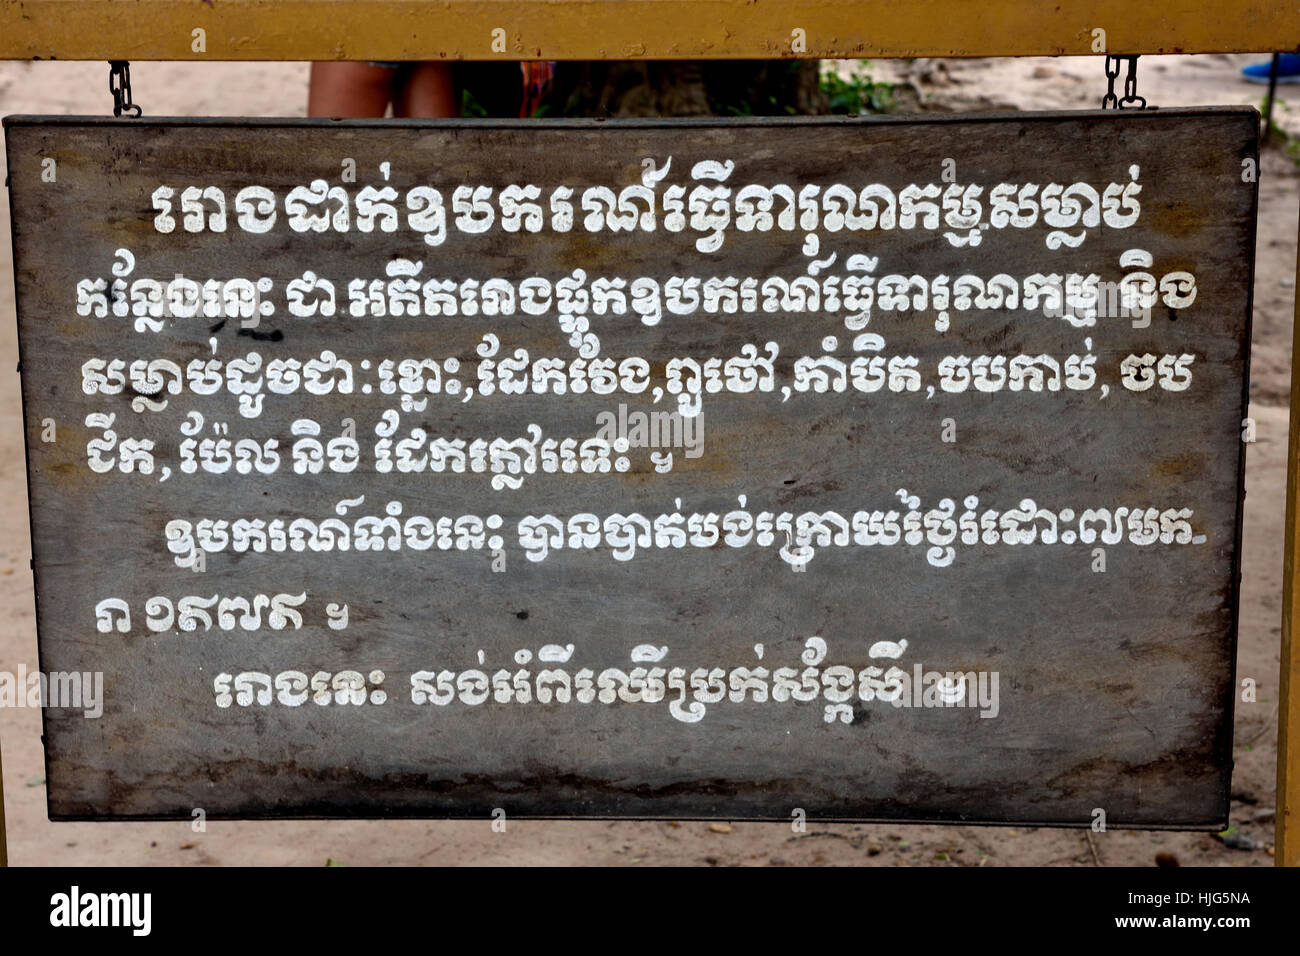 L uccisione di strumenti camera storage - Sito Commemorativo dei campi di sterminio - Choeung Ek, Museo della Cambogia ( fossa comune delle vittime da Pol Pot - Khmer rossi dal 1963 - 1997. ) Phnom Penh Cambogia Foto Stock